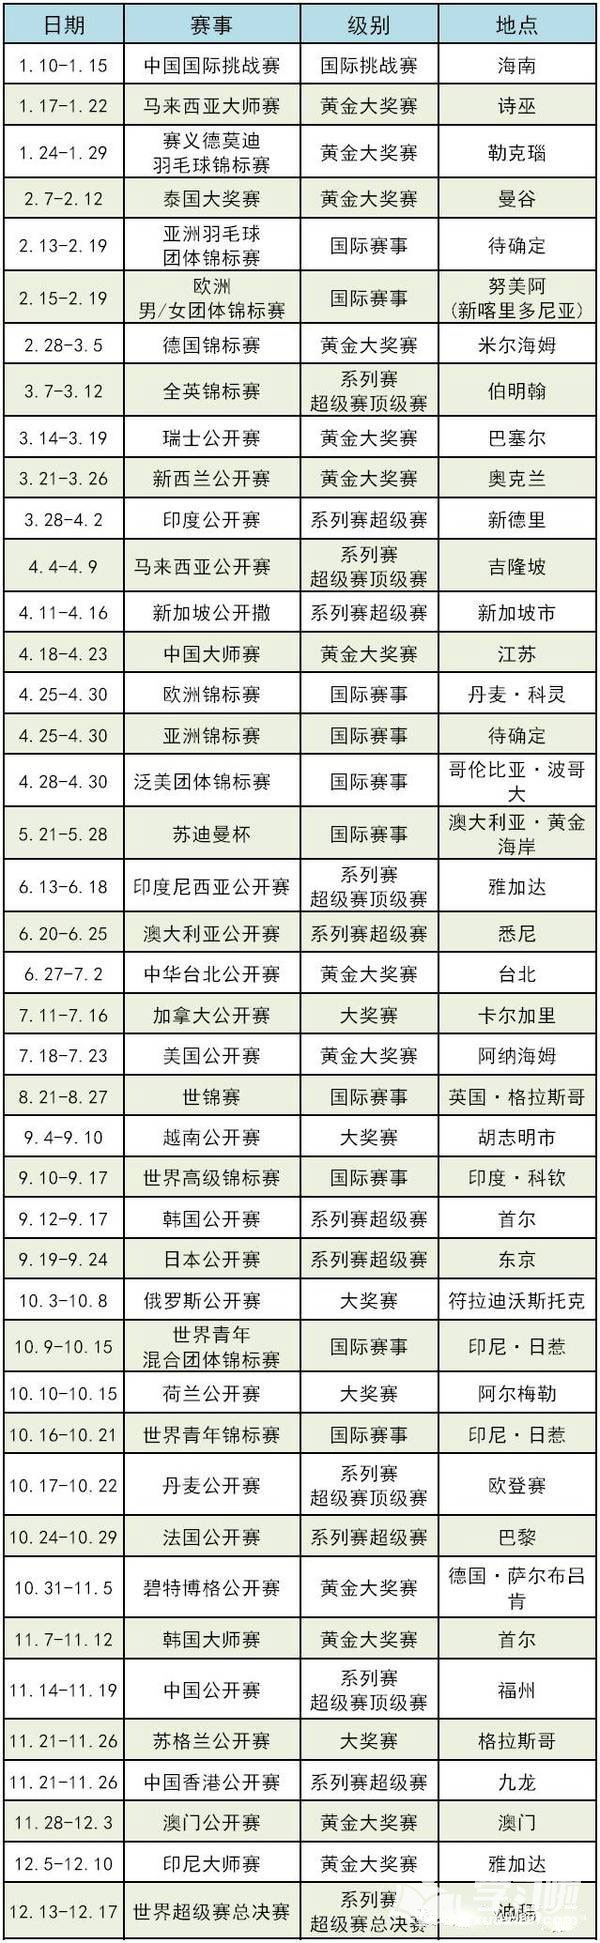 2017羽毛球世锦赛参赛资格中国选手名单_2017羽毛球世锦赛中国队选手名单